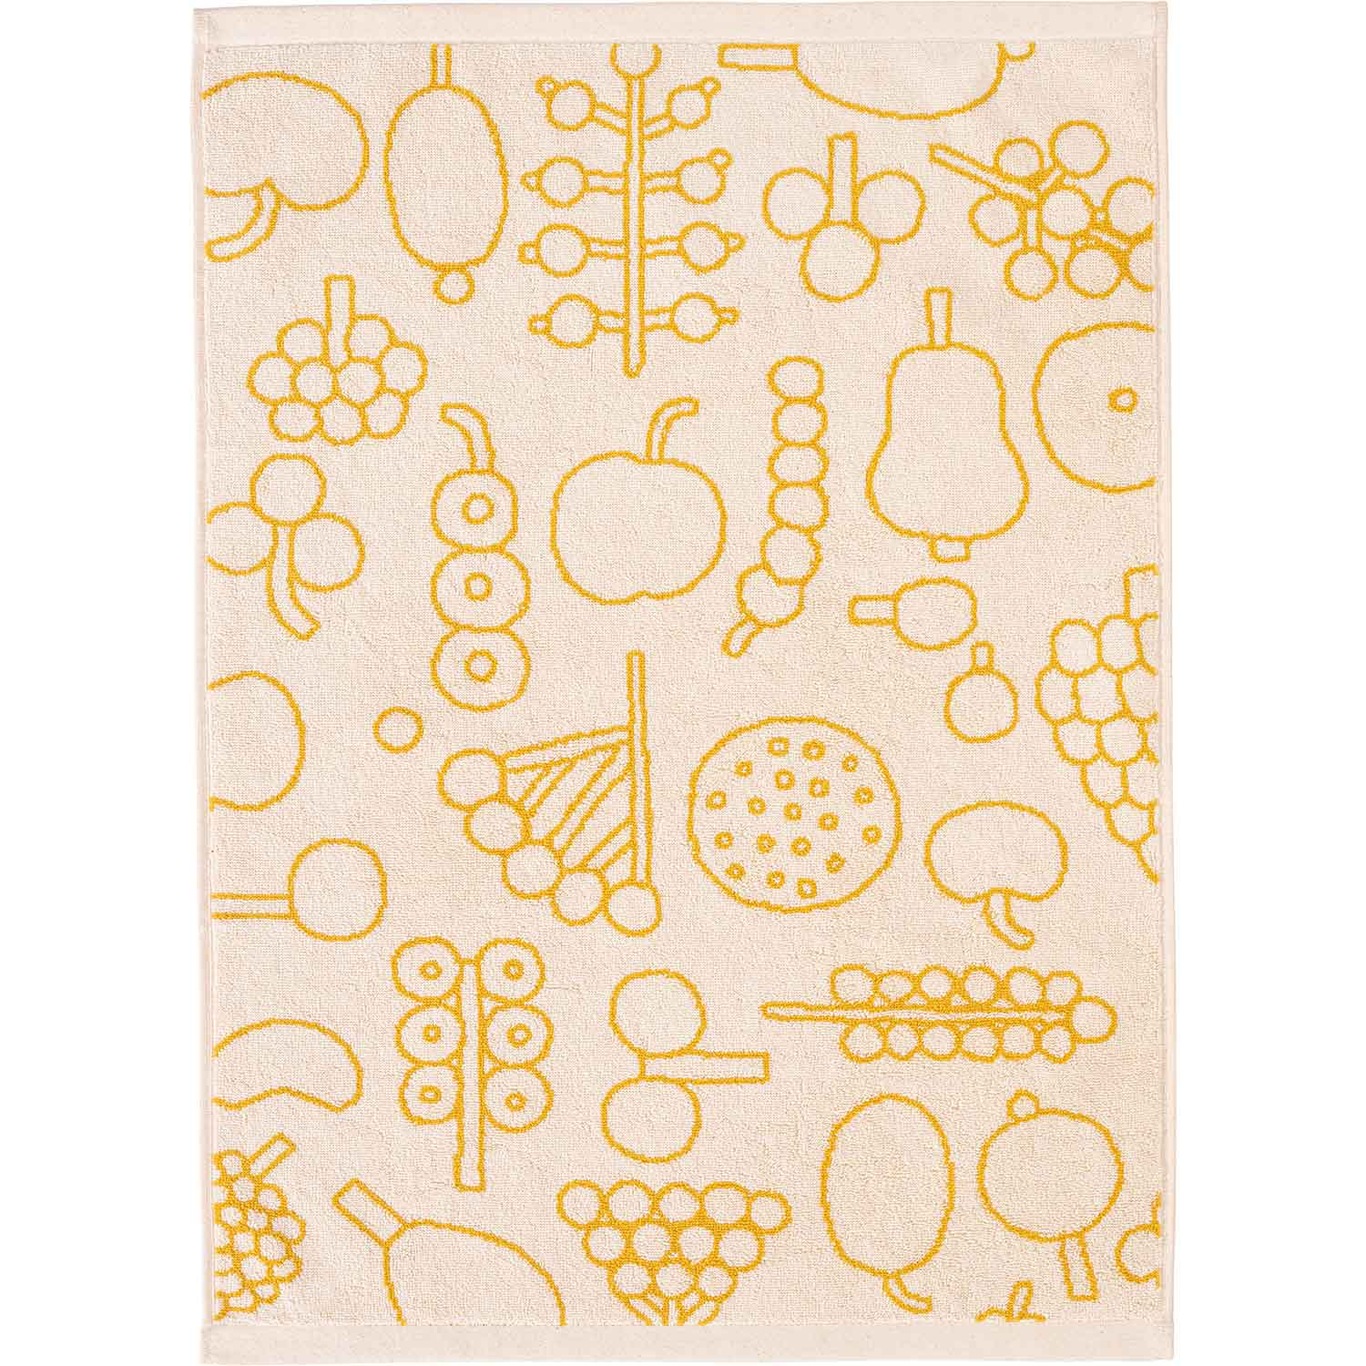 Oiva Toikka Collection Towel, 50x70 cm, Frutta Yellow